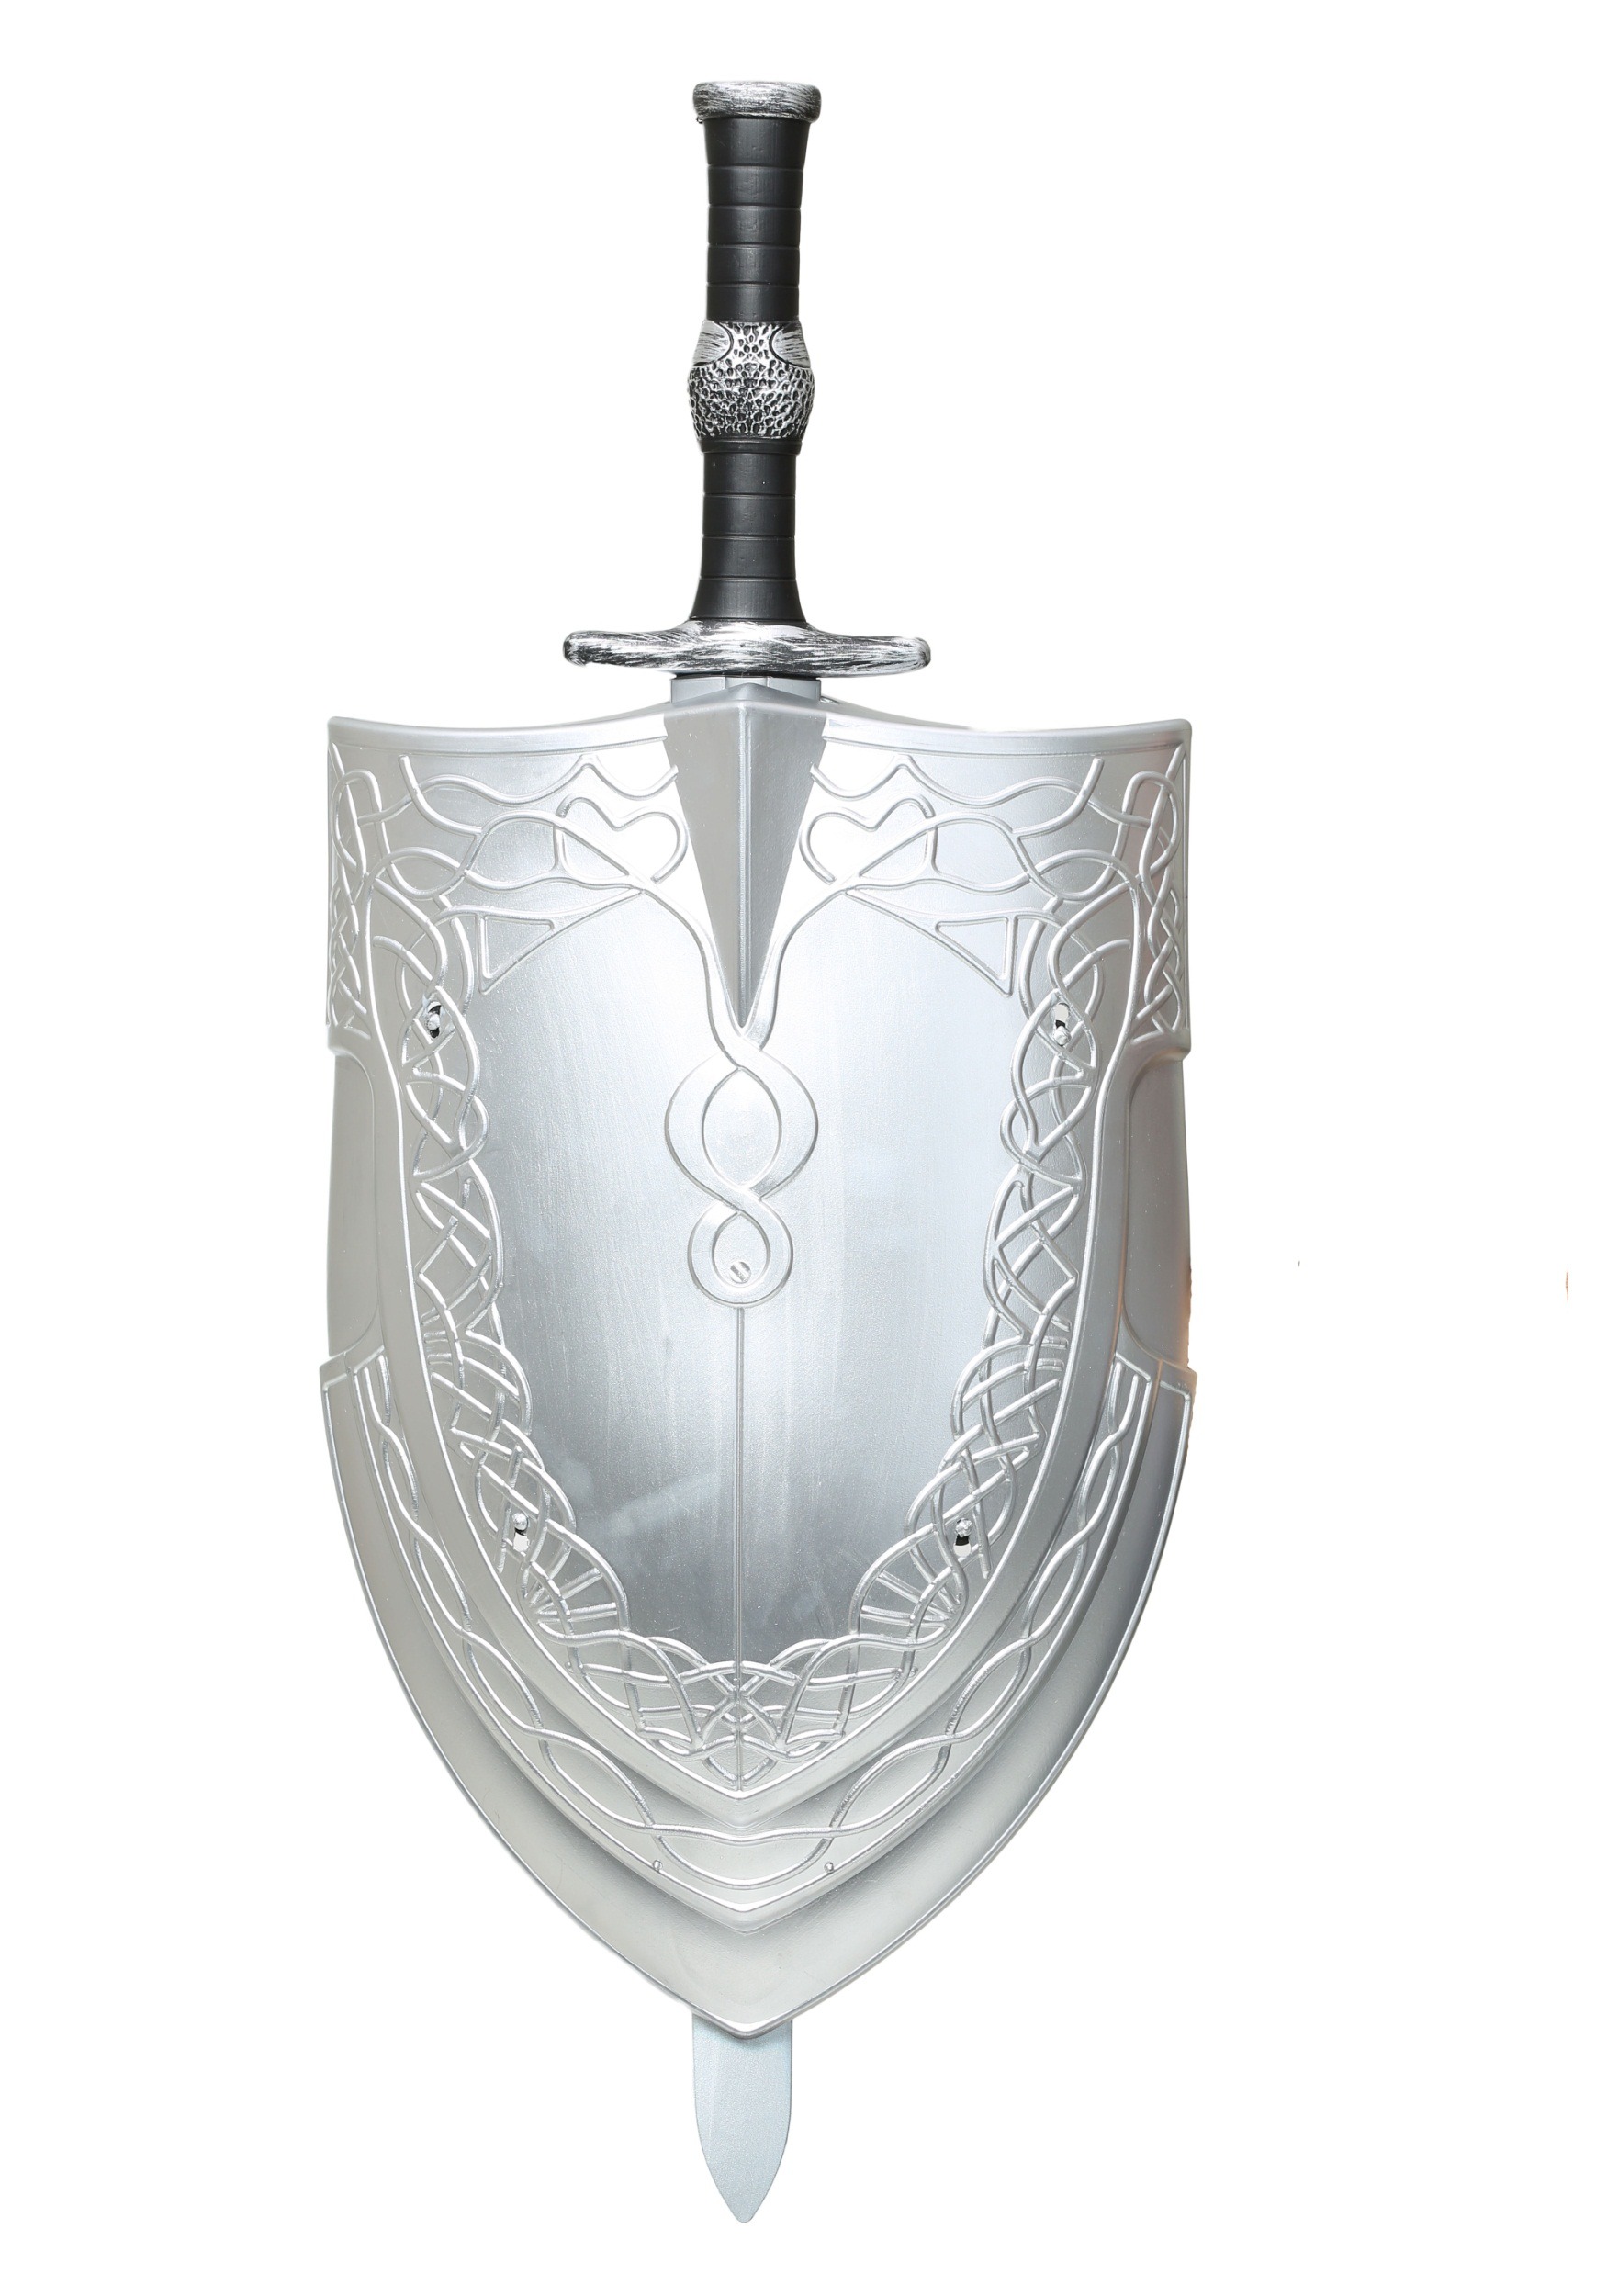 Valiant Knight Sword and Shield Set